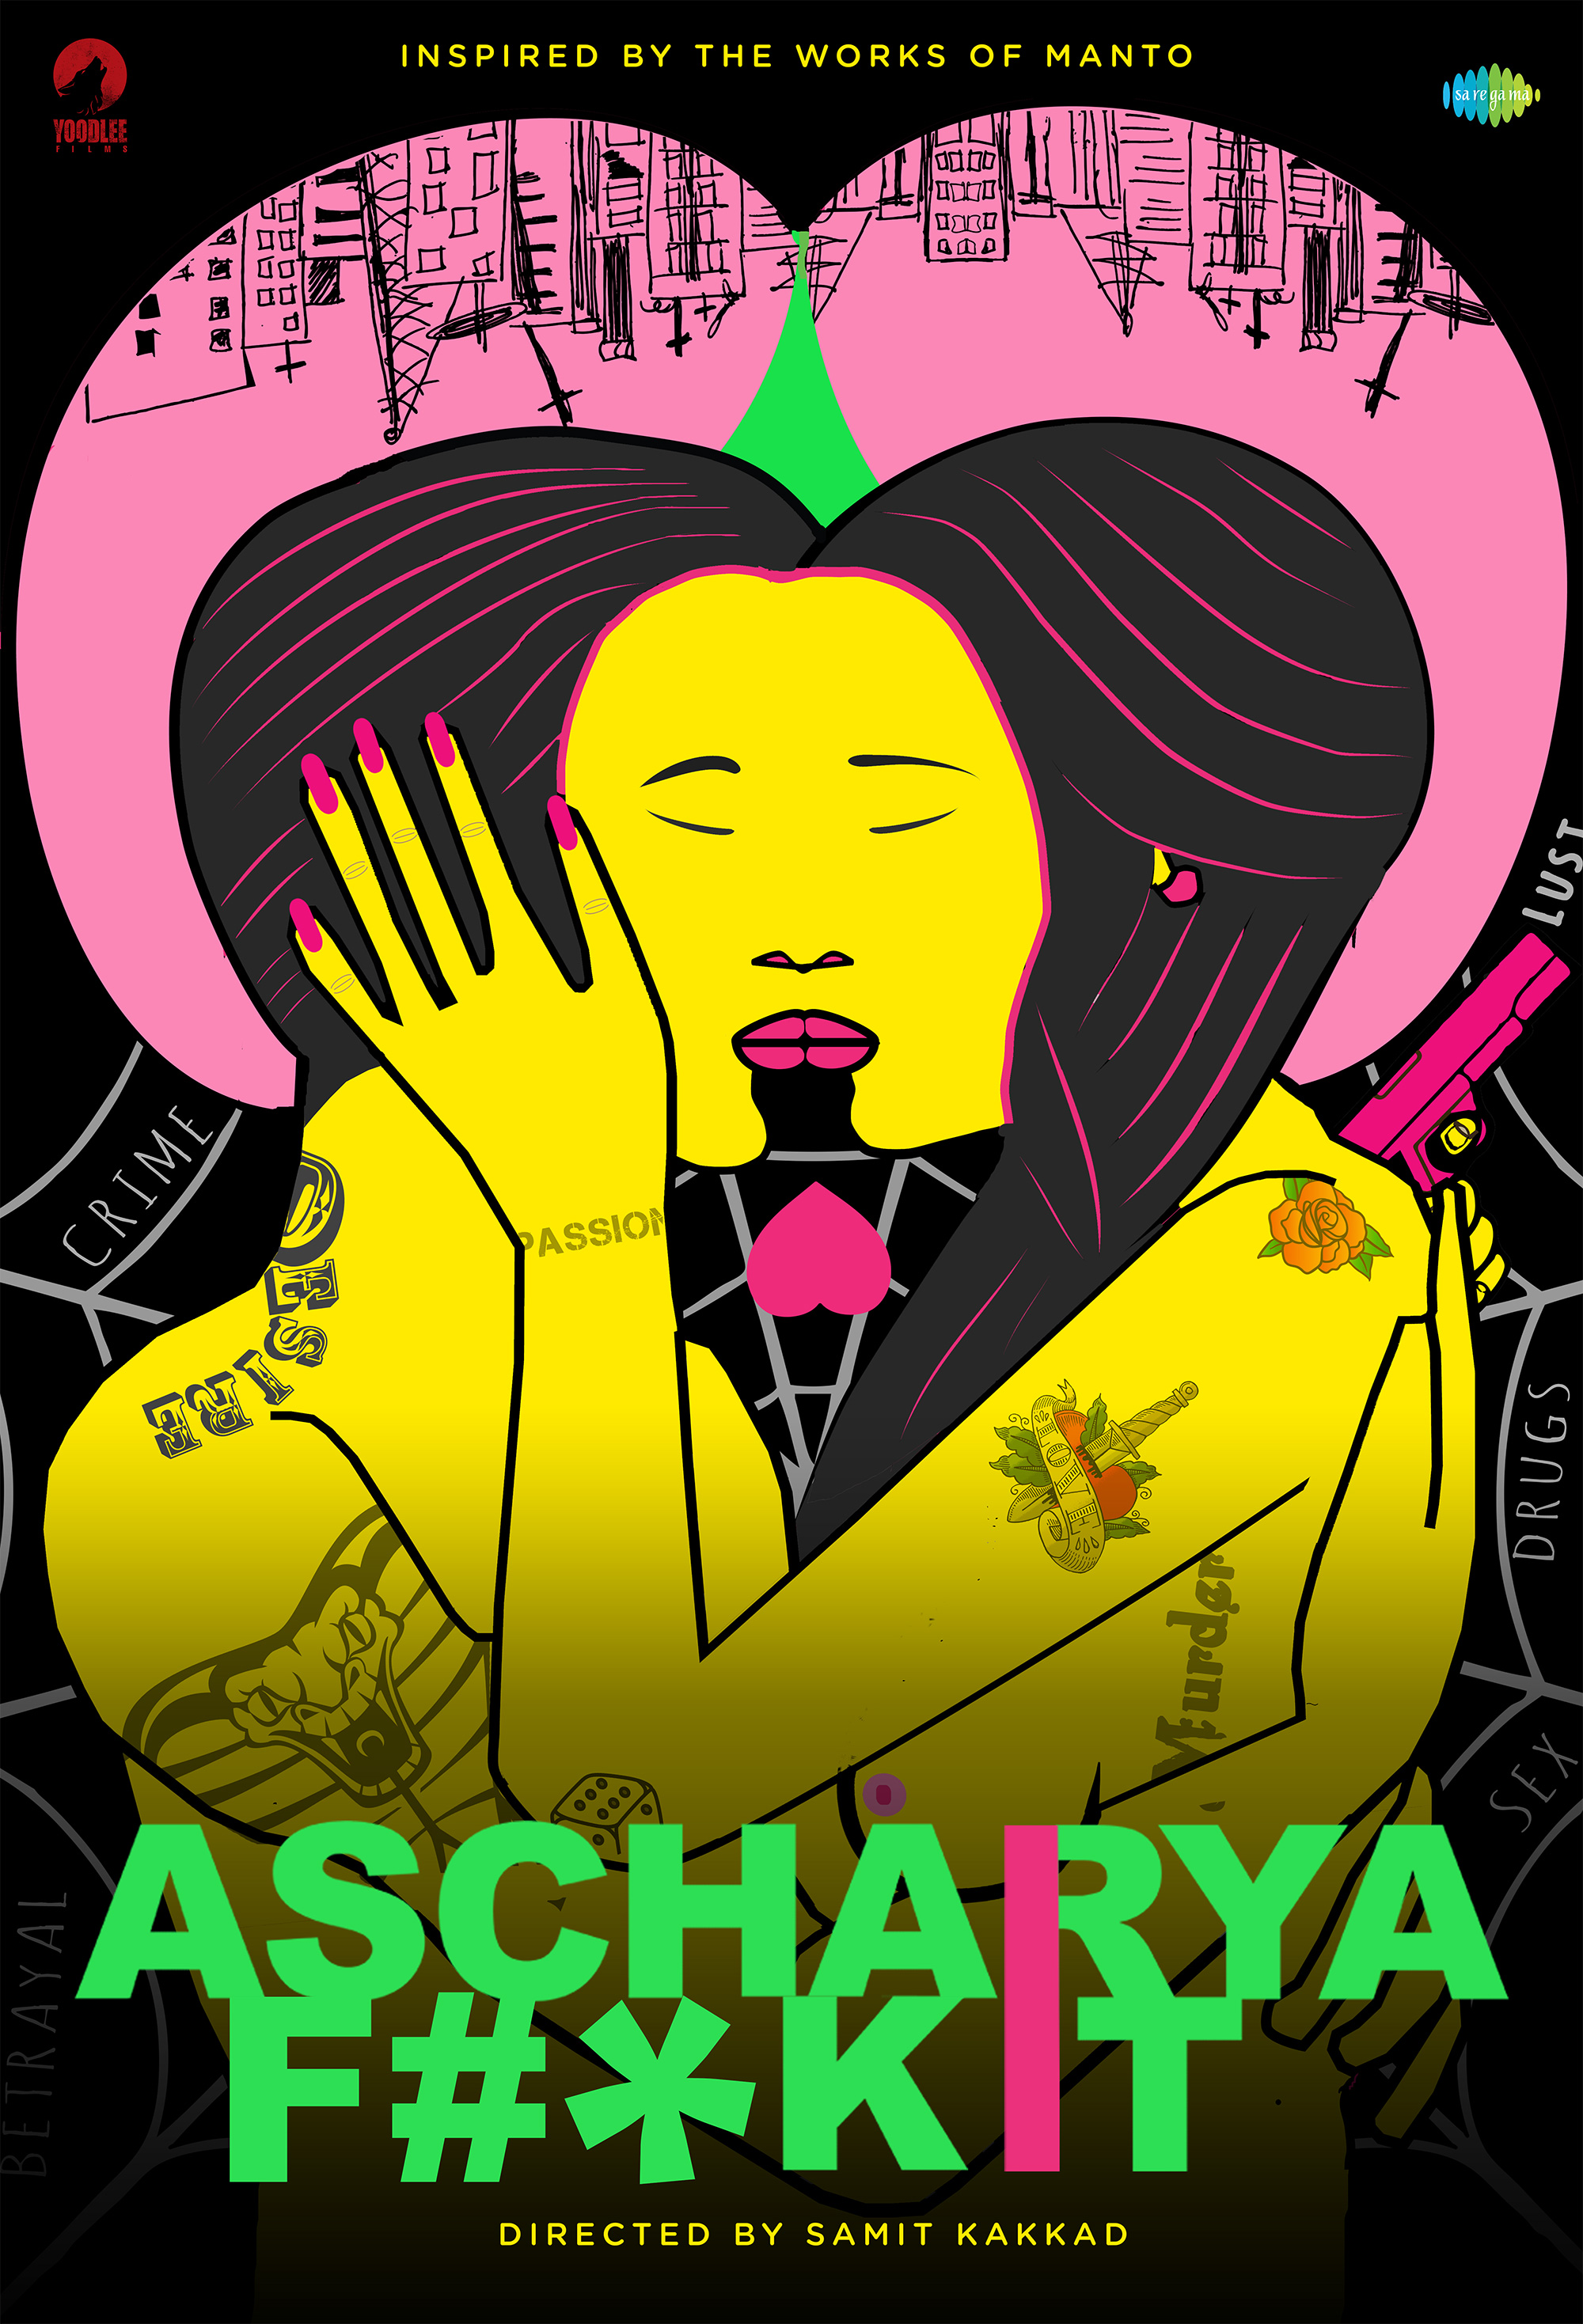 Ascharyachakit - Steamy Movies on Netflix